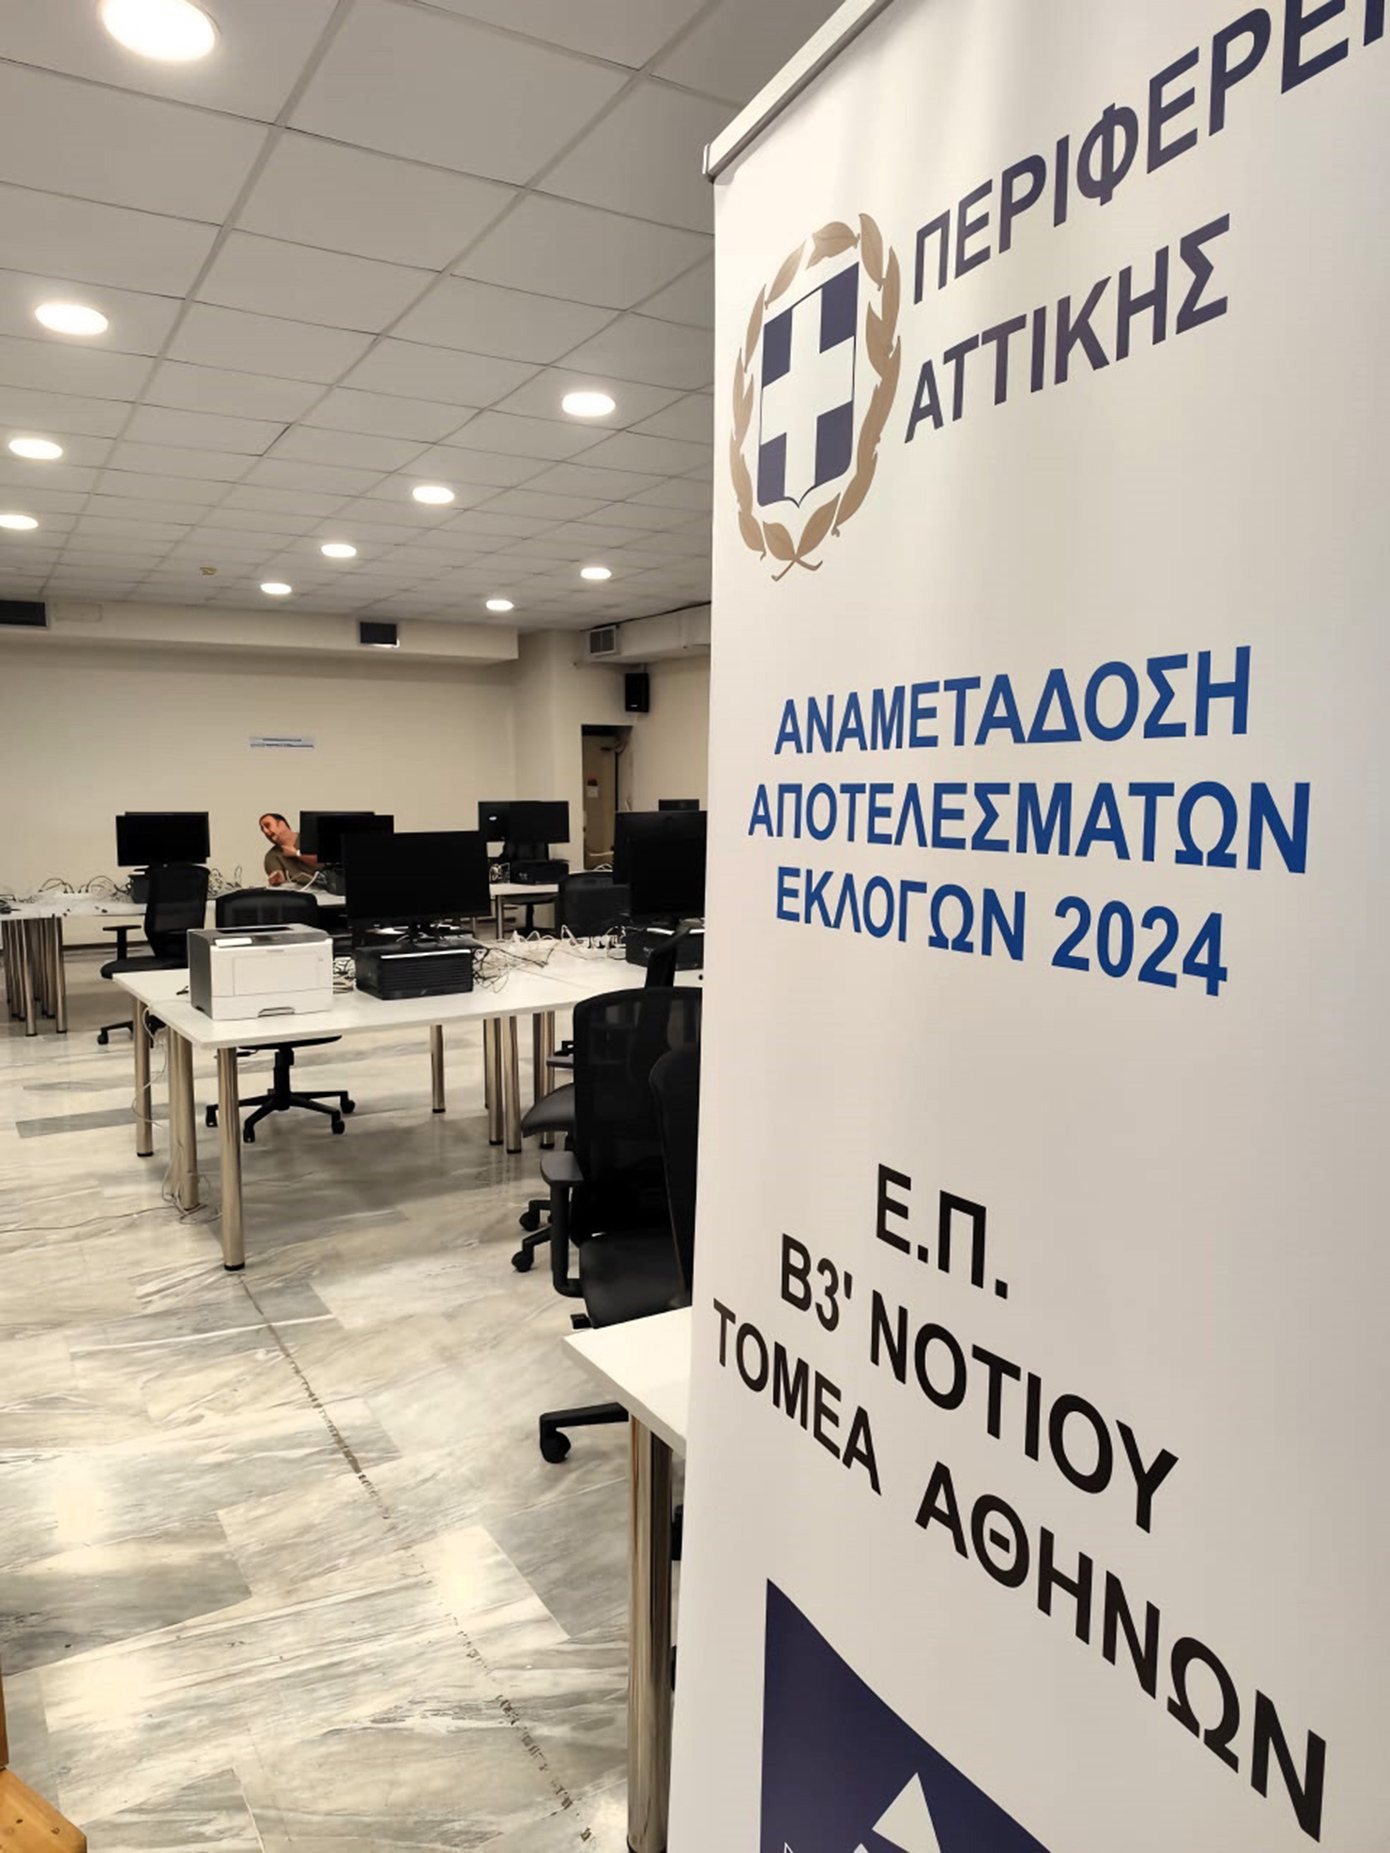 Σε πλήρη ετοιμότητα ο μηχανισμός της Περιφέρειας Αττικής για τις ευρωεκλογές